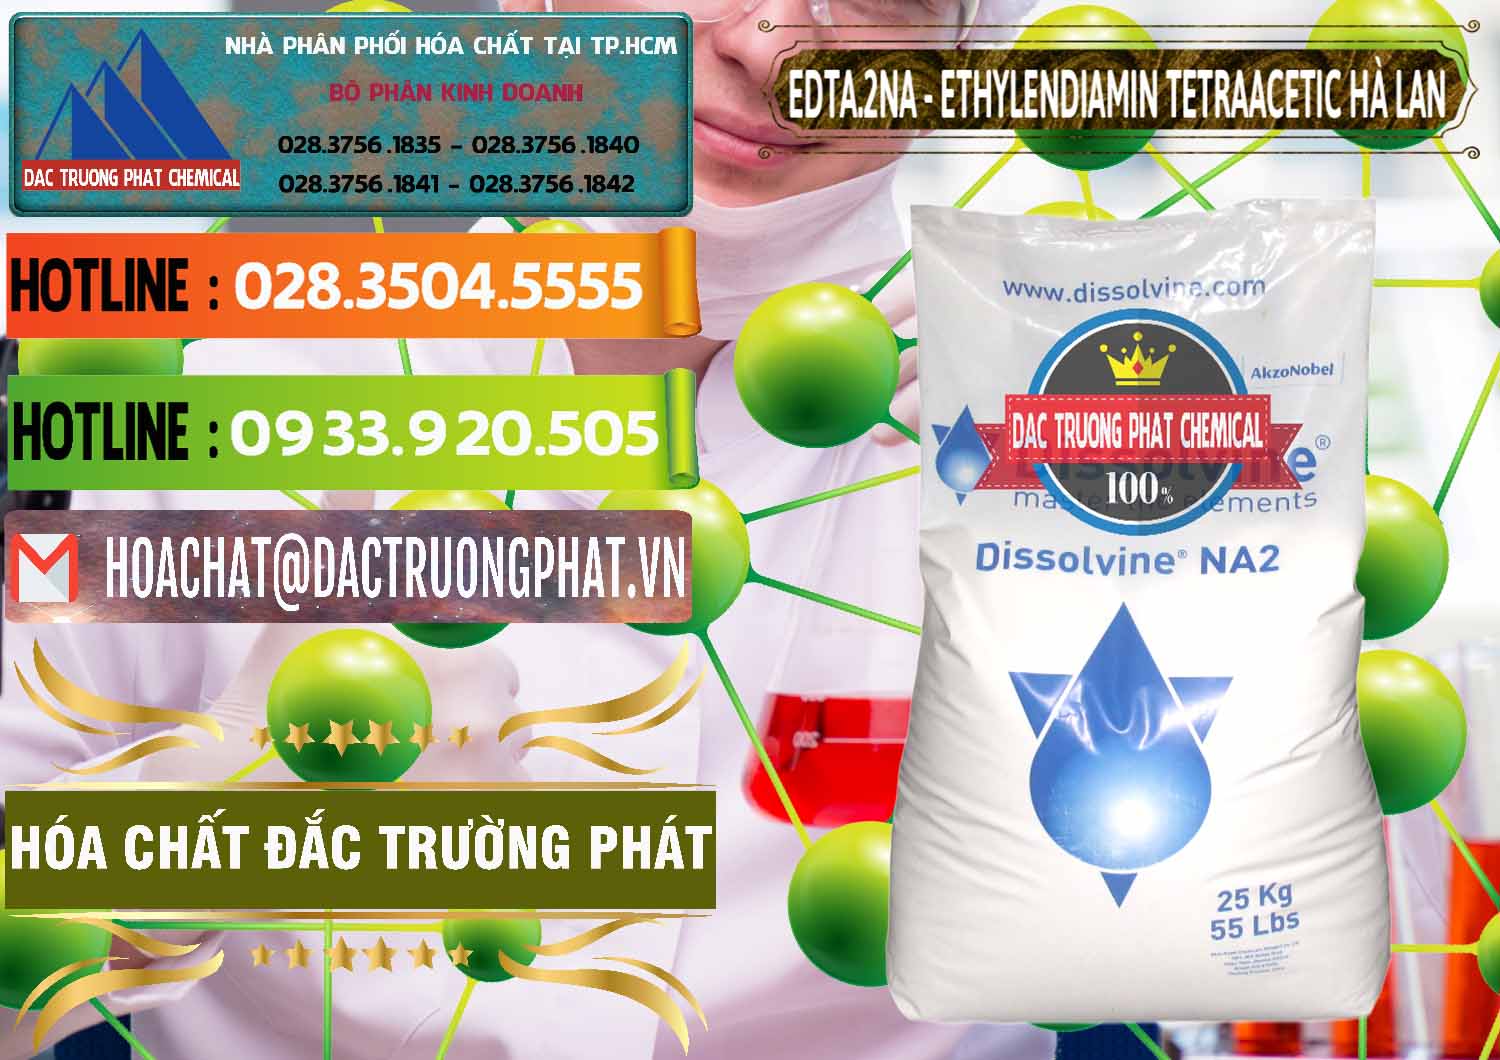 Đơn vị chuyên cung ứng & bán EDTA.2NA - Ethylendiamin Tetraacetic Dissolvine Hà Lan Netherlands - 0064 - Công ty bán ( cung cấp ) hóa chất tại TP.HCM - cungcaphoachat.com.vn